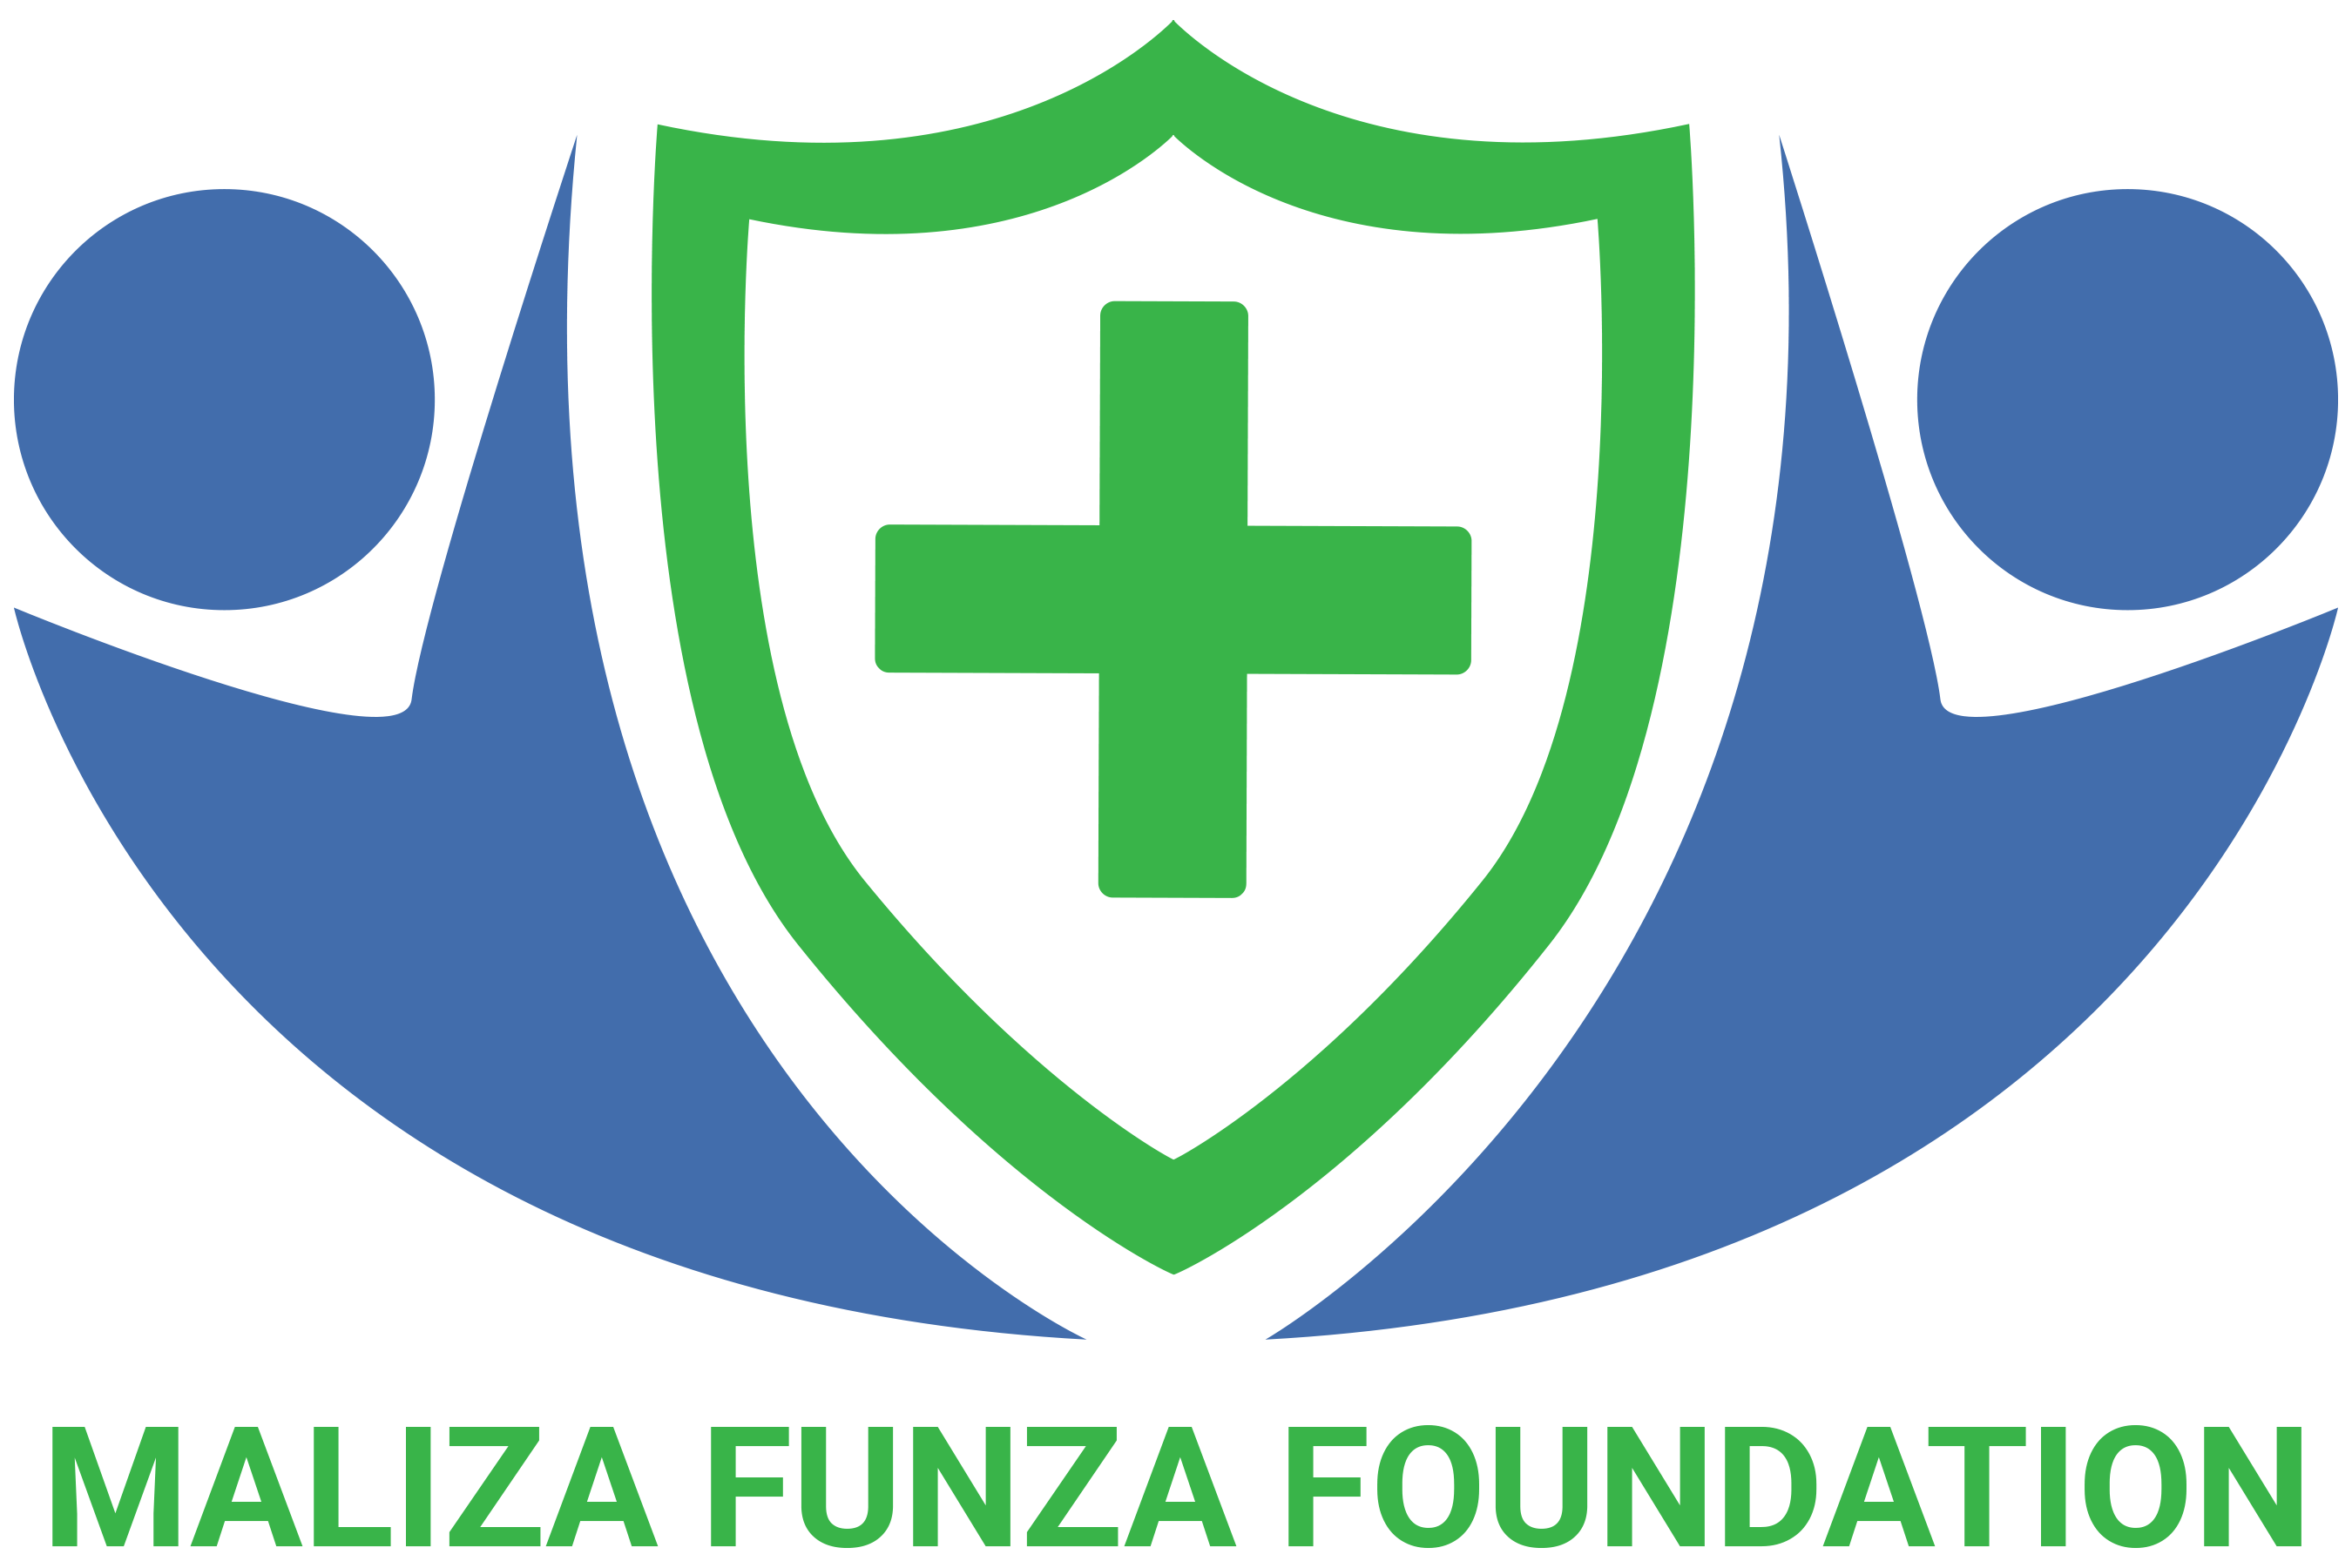 Maliza Funza Foundation